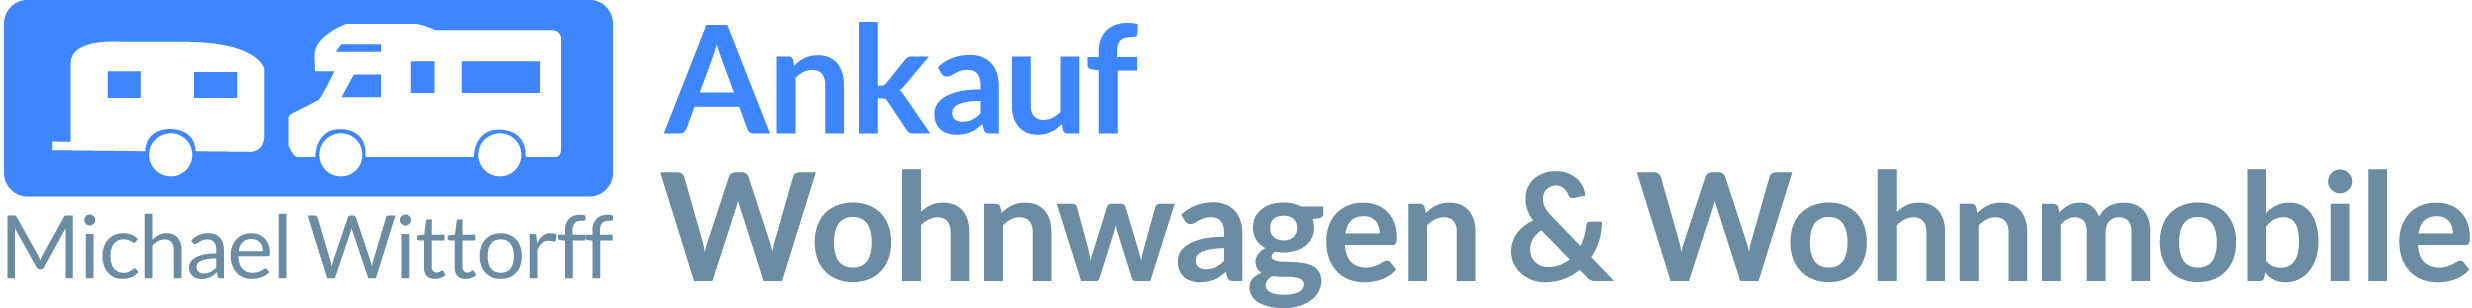 Logo Ankauf Wohnwagen